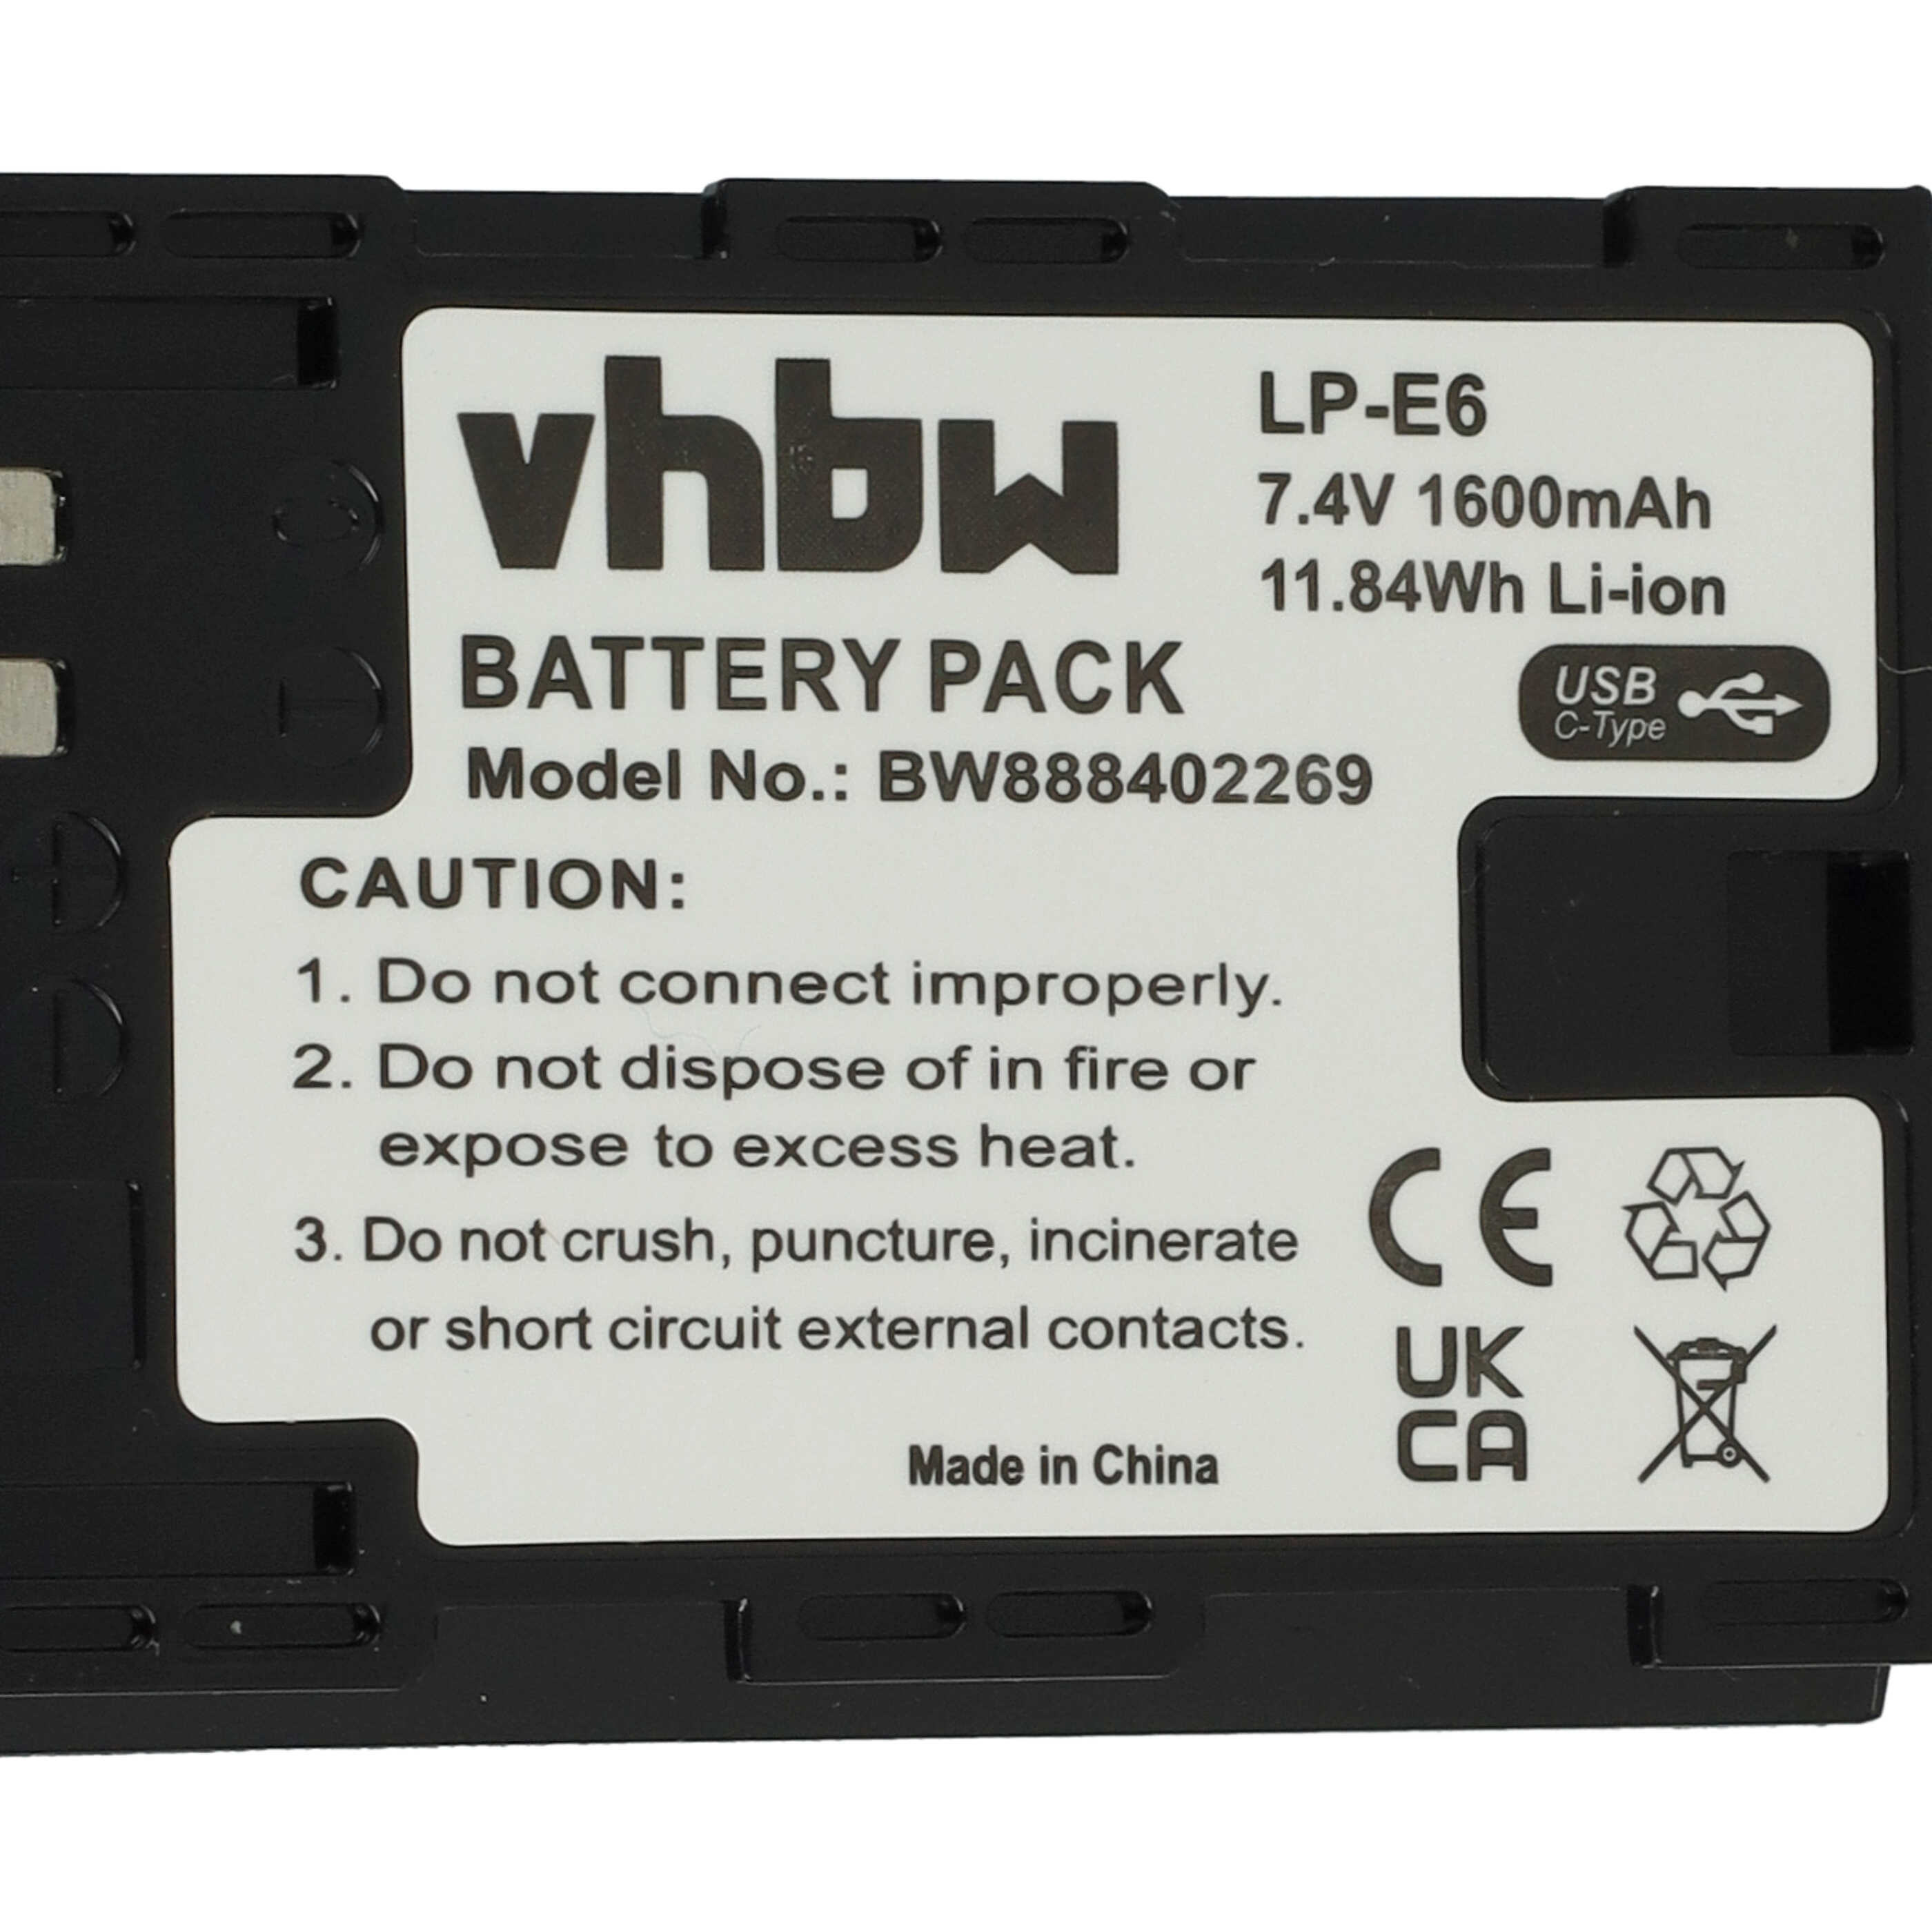 Batterie remplace Canon LP-E6 pour appareil photo - 1600mAh 7,4V Li-ion - USB-C